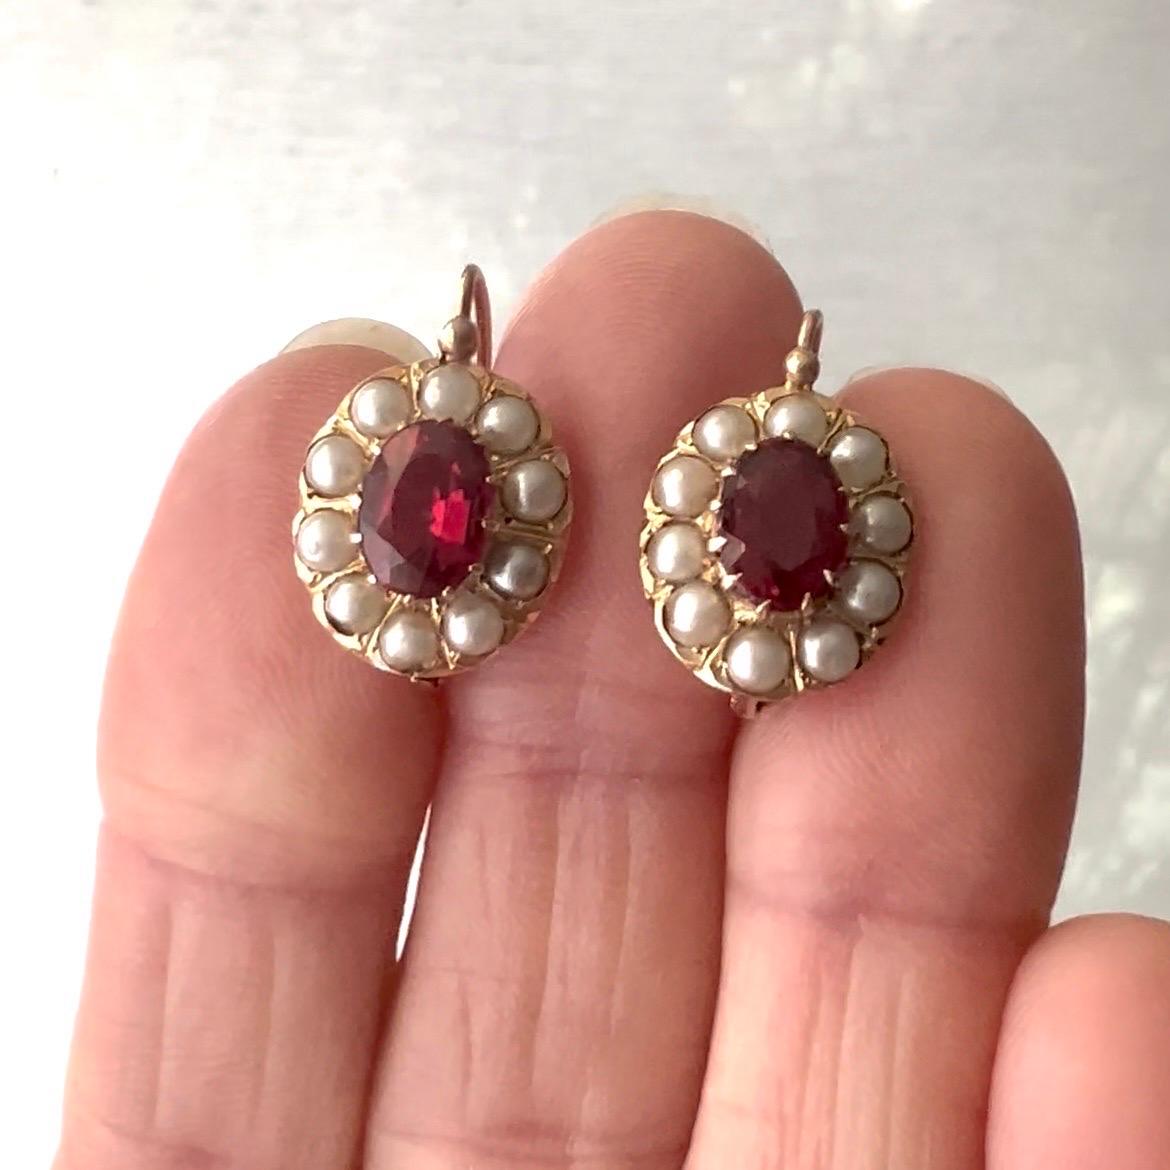 Diese antiken Rubin- und Perlenohrringe werden durch ihre zarte, durchbrochene Goldfassung perfekt in Szene gesetzt. Die schönen durchscheinenden rosafarbenen Rubine und die hellen Perlen machen die Ohrringe sehr attraktiv.

Ein wunderschöner